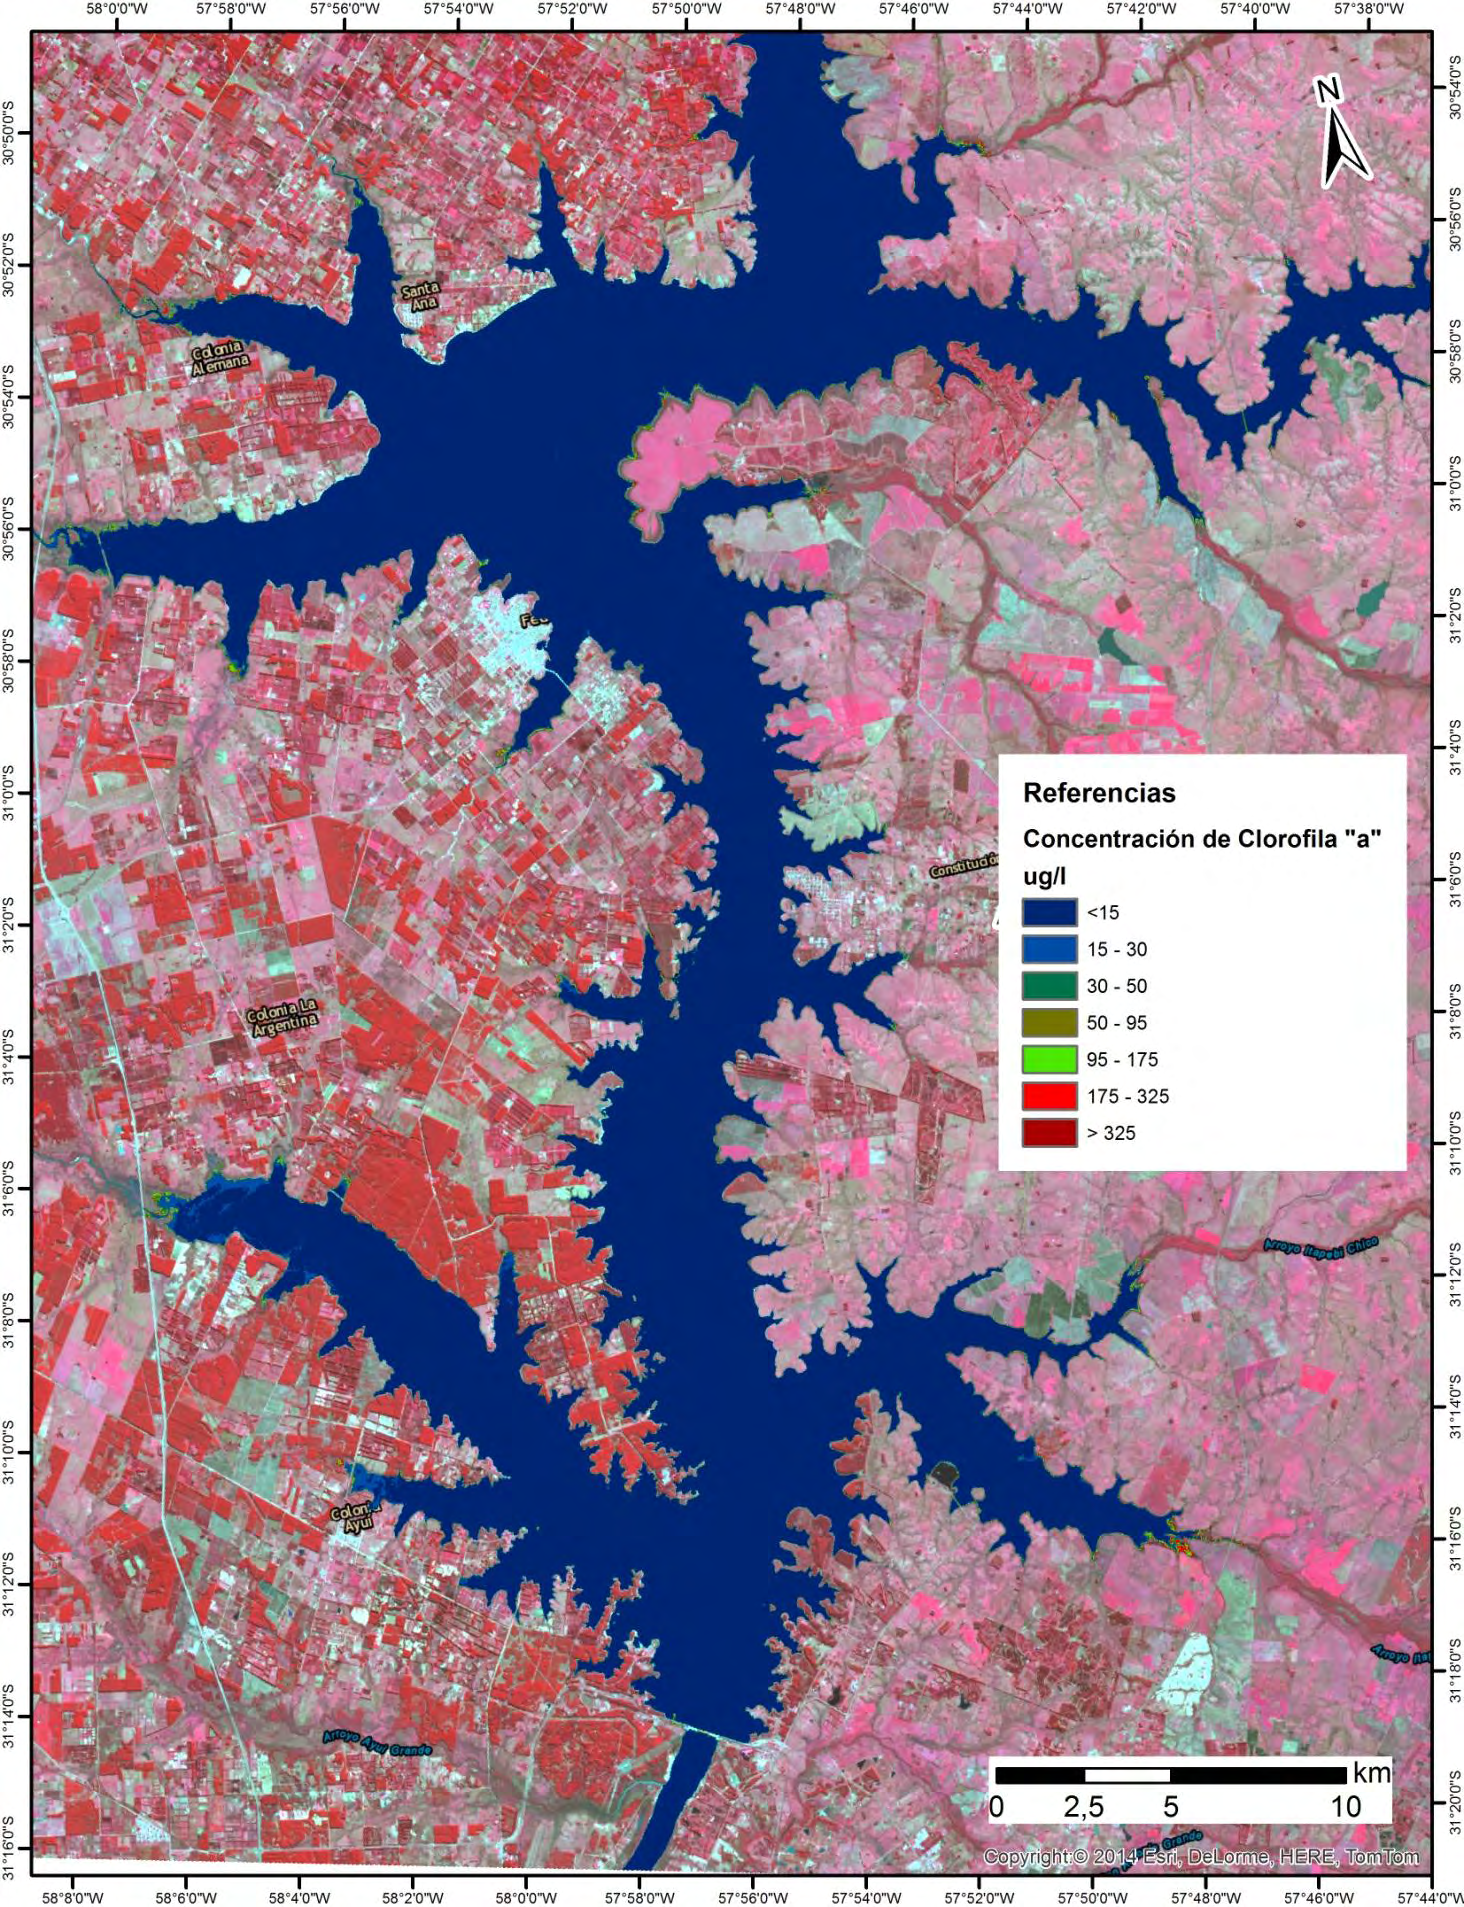 Concentración de Clorofila a de las aguas del Río Uruguay obtenida a partir de la imagen Landsat 8 OLI del 13/08/2014.